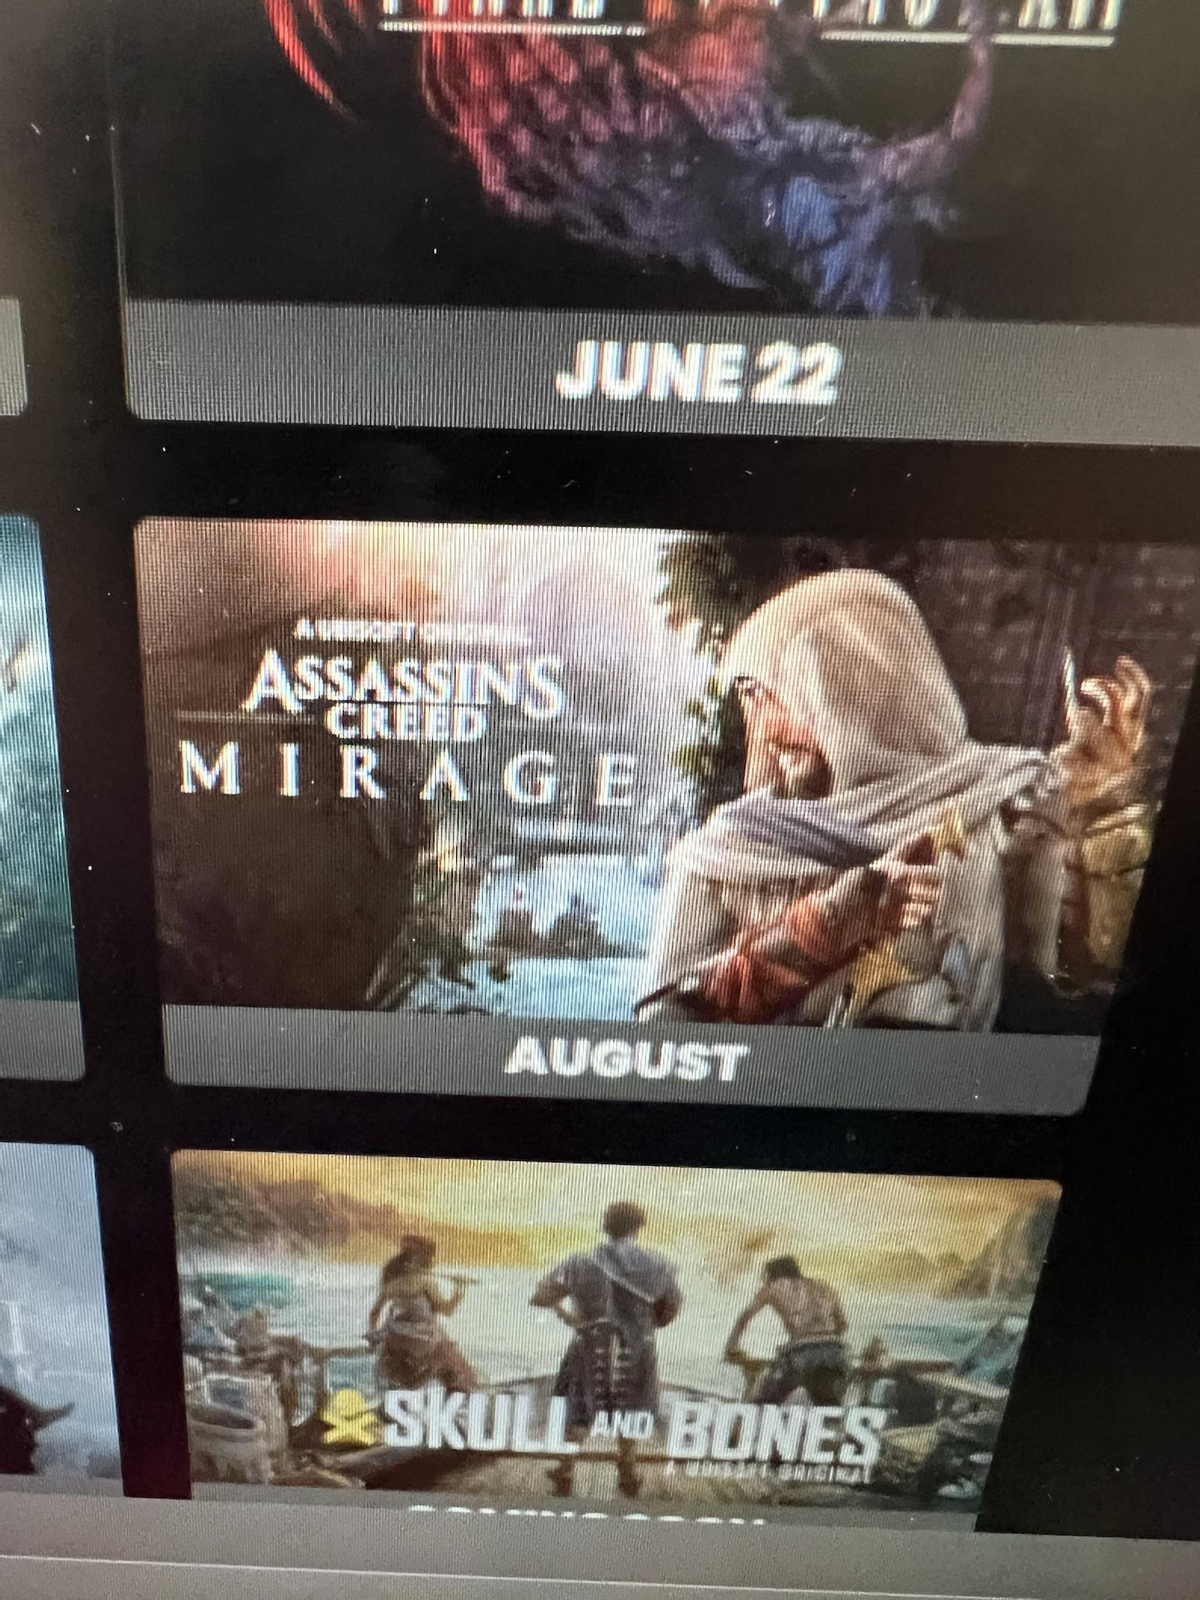 Еще один источник подтвердил выход Assassin's Creed Mirage в августе